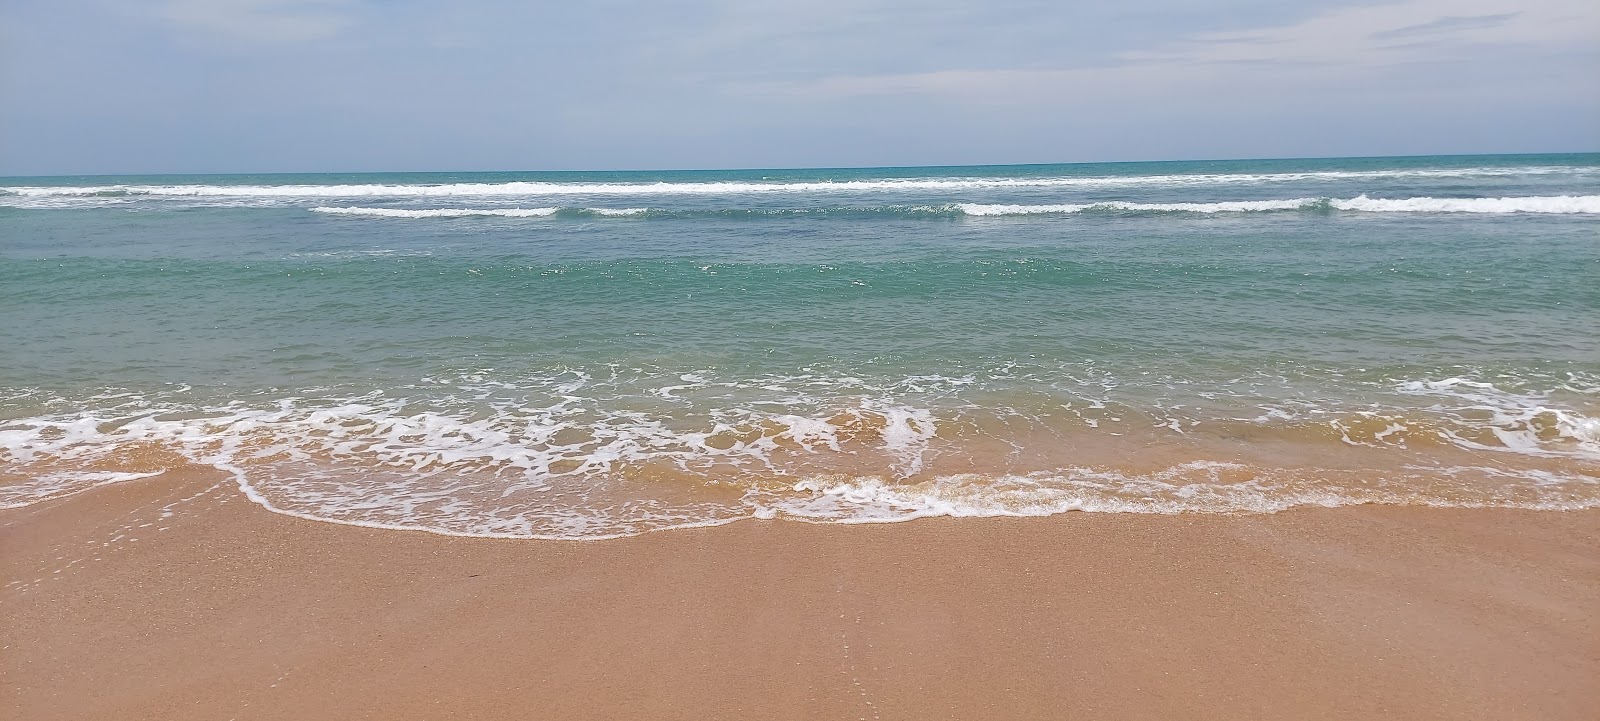 Valokuva Kooduthalai beachista. pinnalla turkoosi puhdas vesi:n kanssa